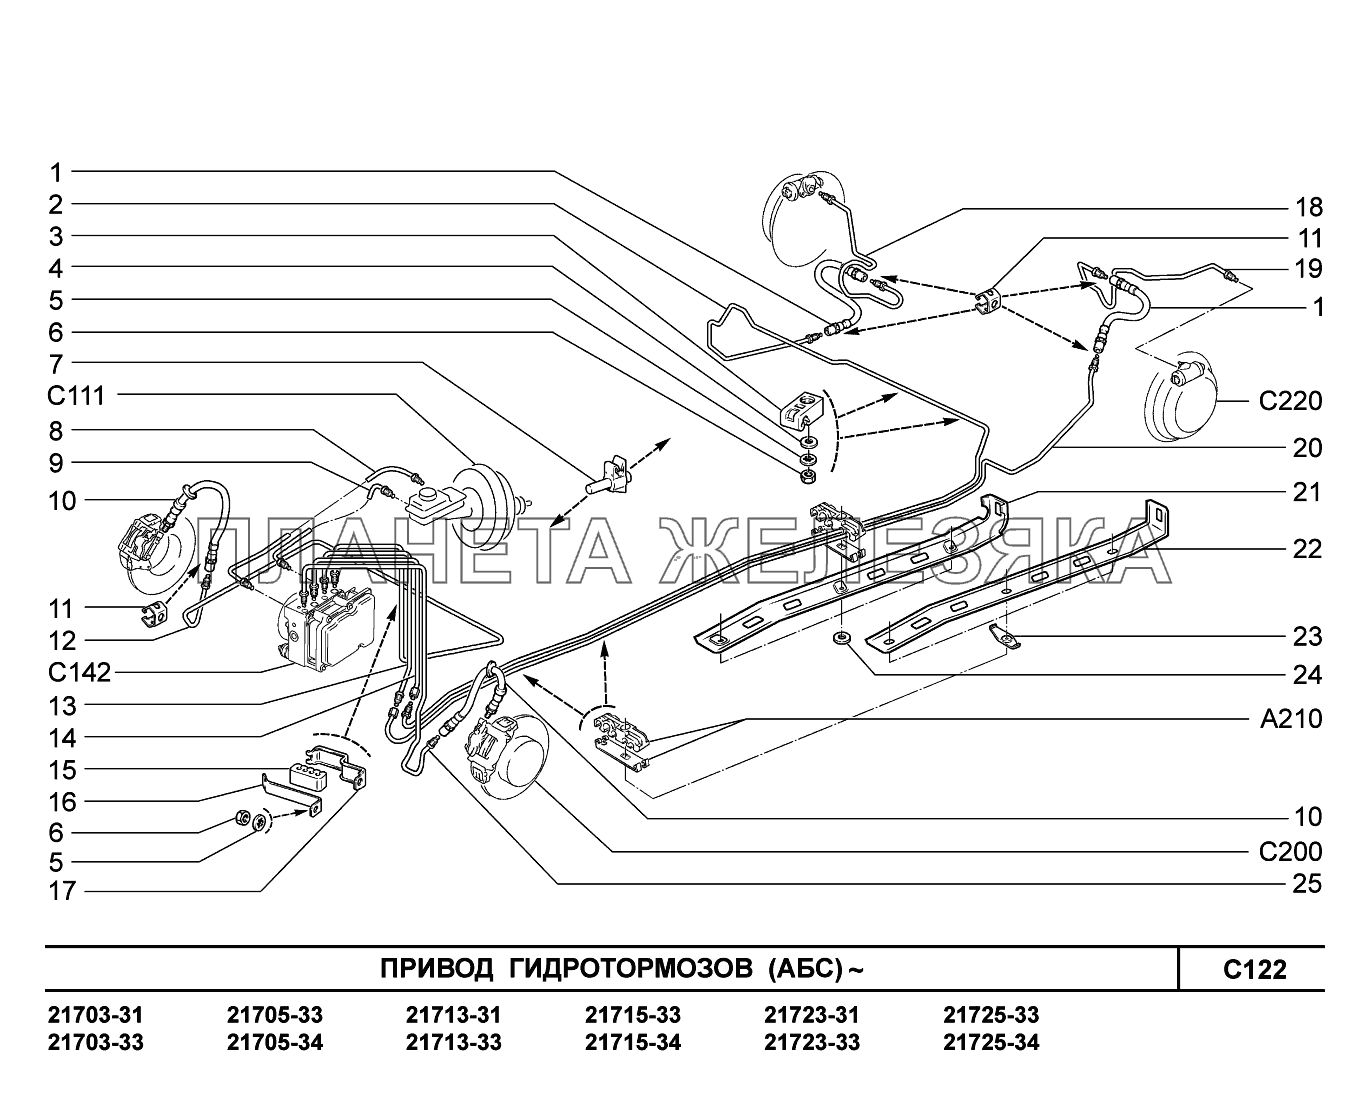 C122. Привод гидротормозов ВАЗ-2170 